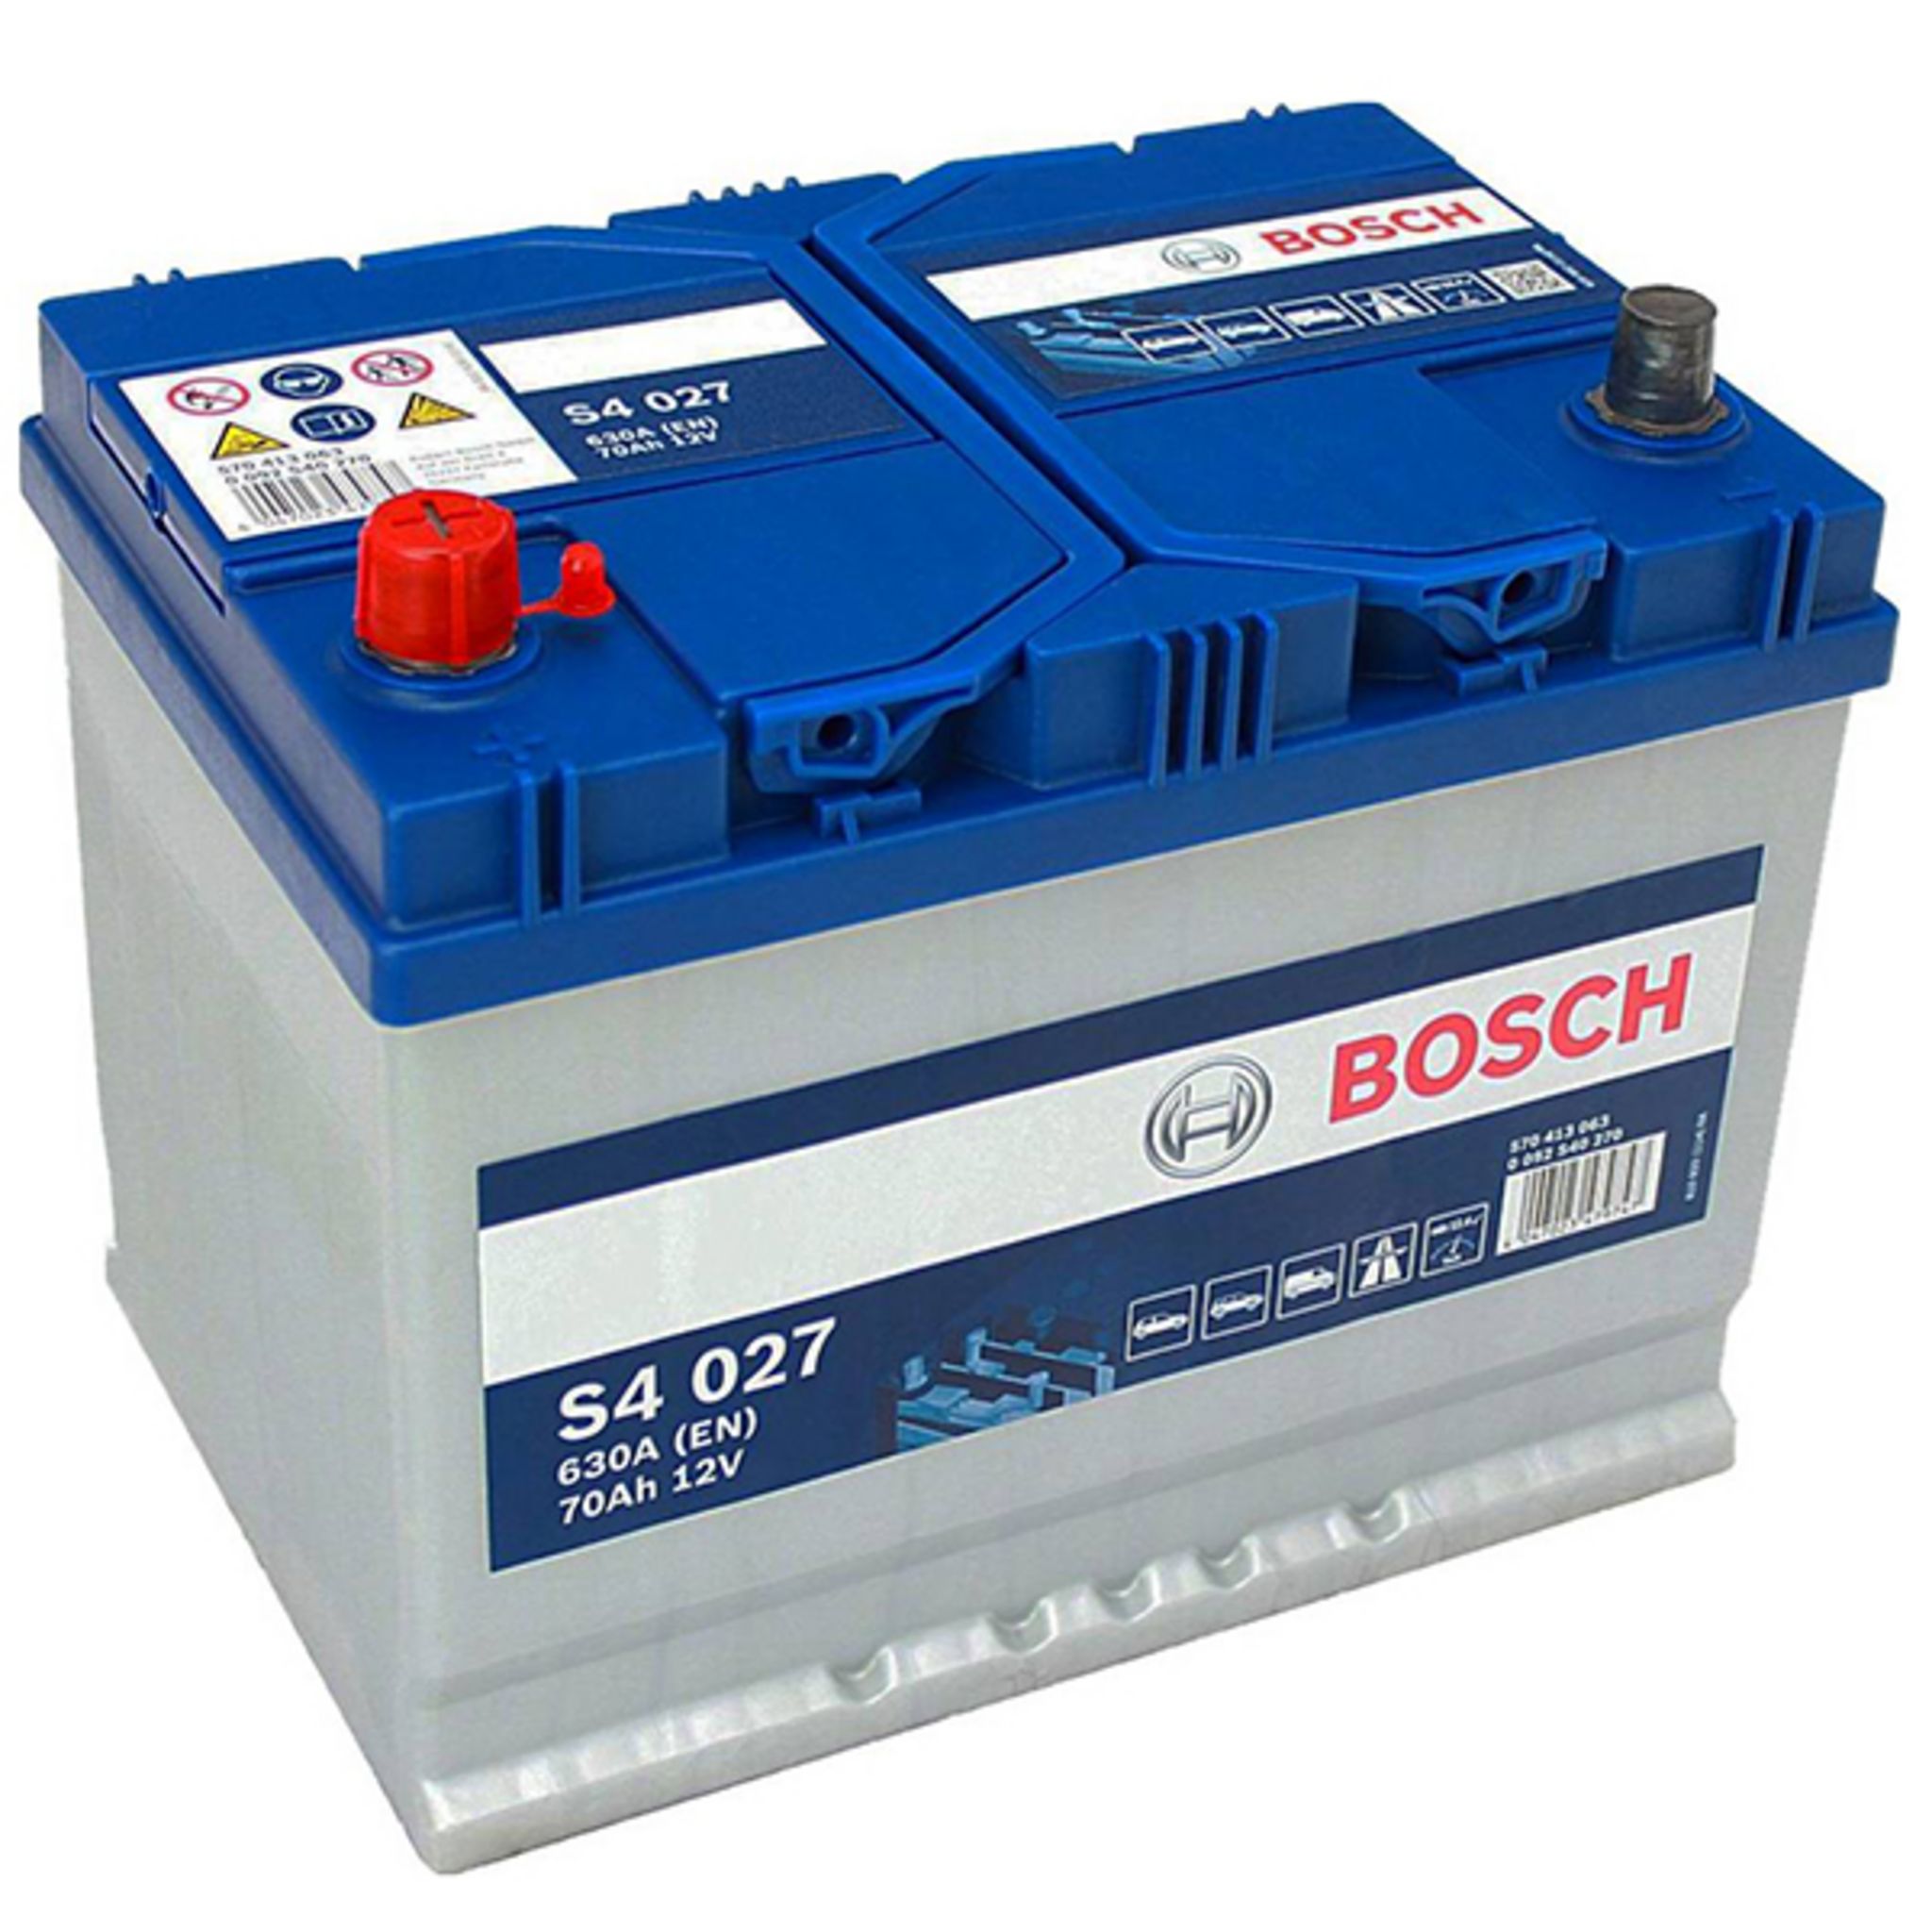 BOSCH Batterie Bosch S4027 70Ah 630A BOSCH pas cher 